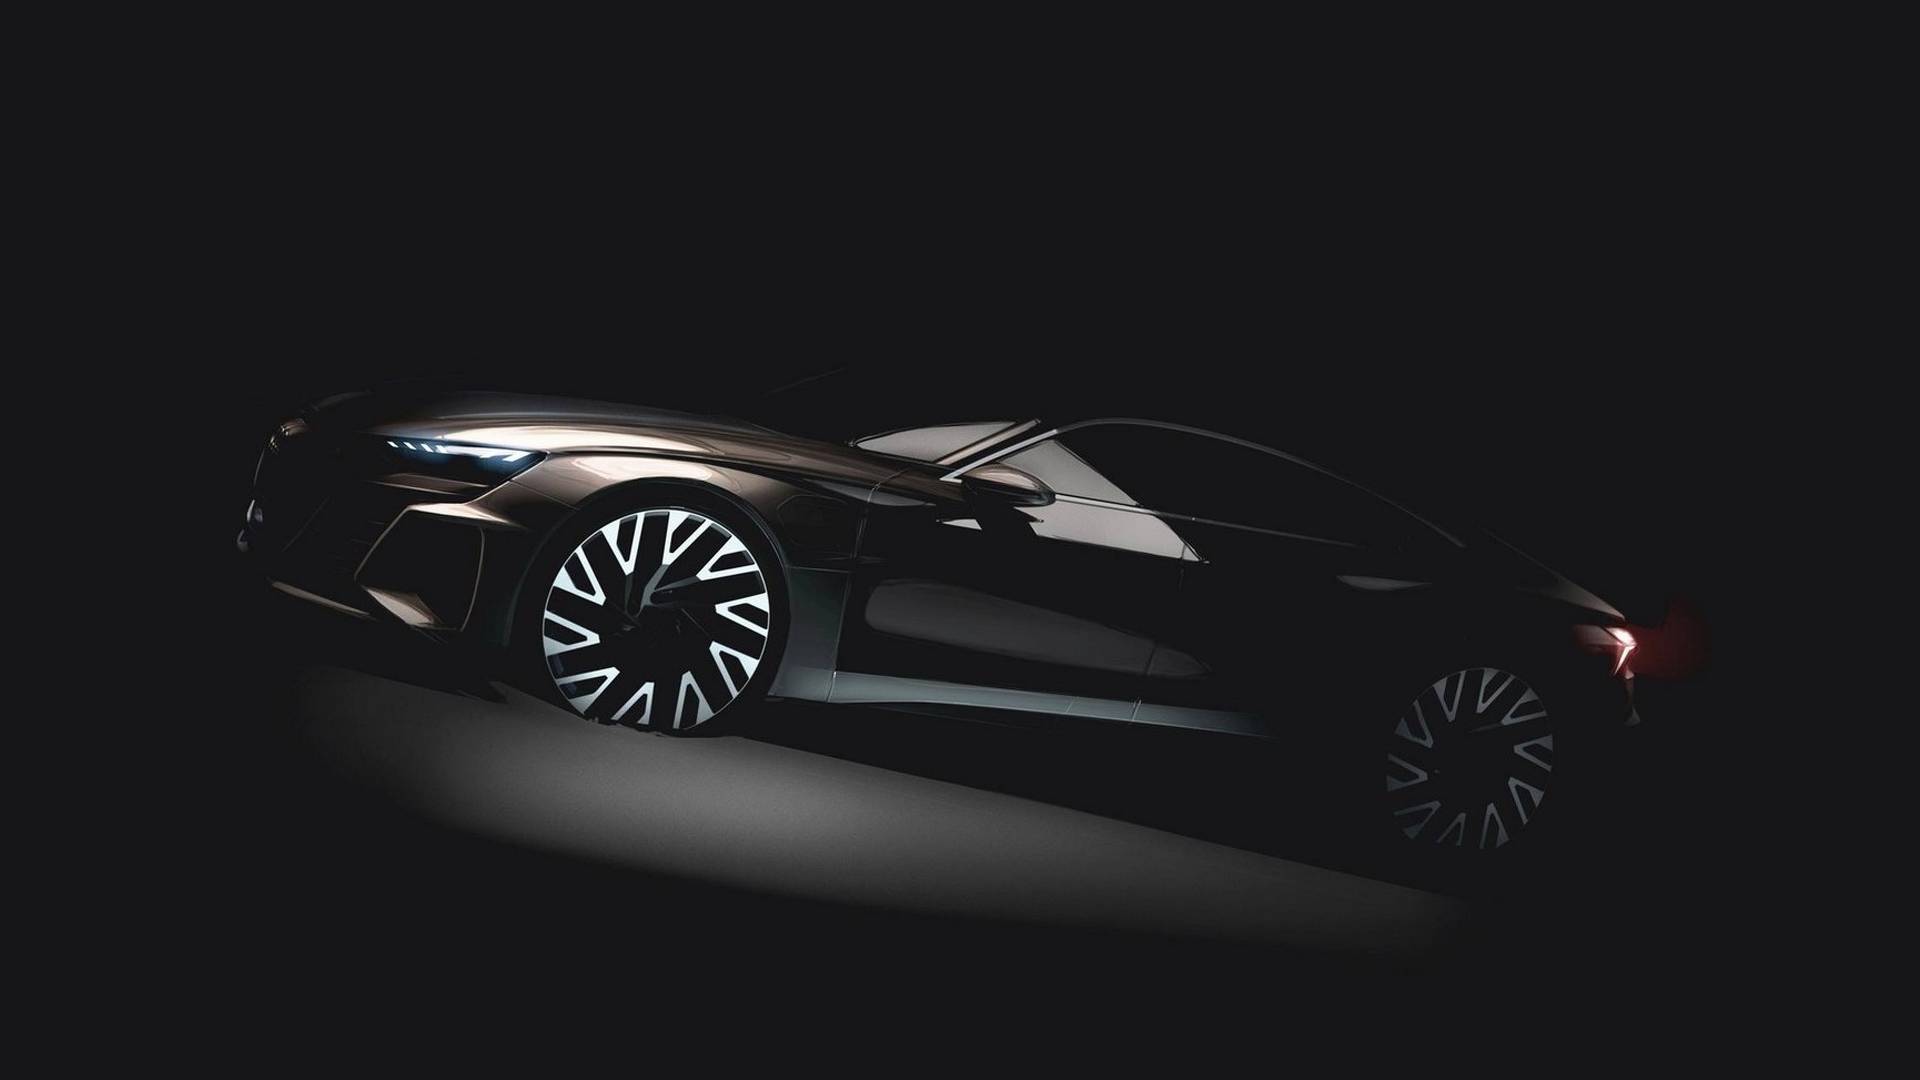 Ηλεκτροκίνητο τετράθυρο coupe από την Audi το 2020